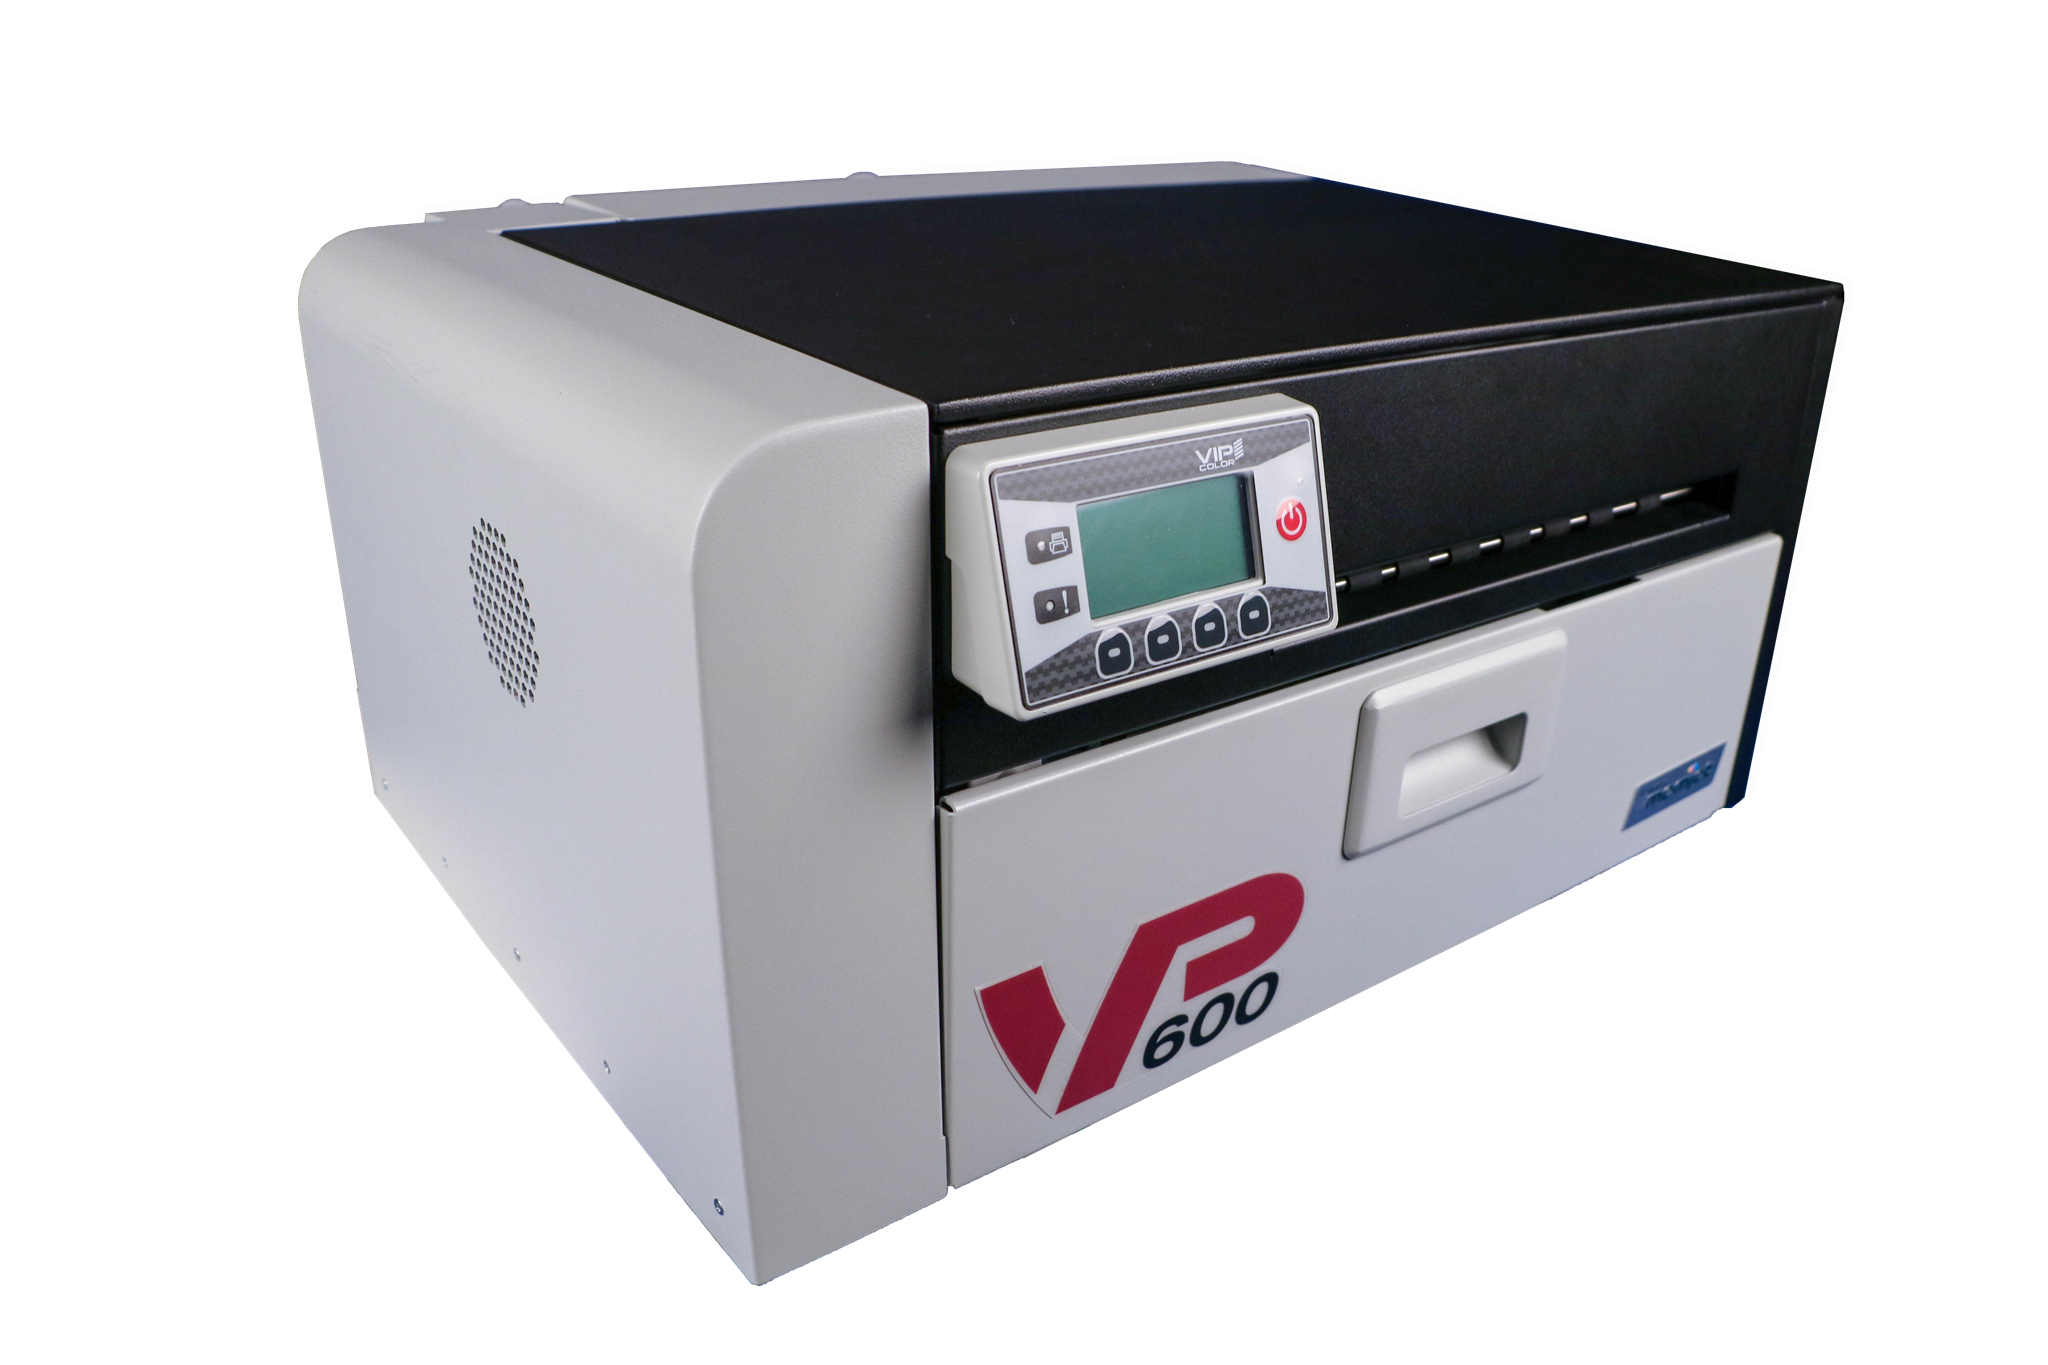 Imagen de Impresora de etiquetas VIP COLOR VP600 incl. desbobinador externo, cabezal de impresión y juego de tintas